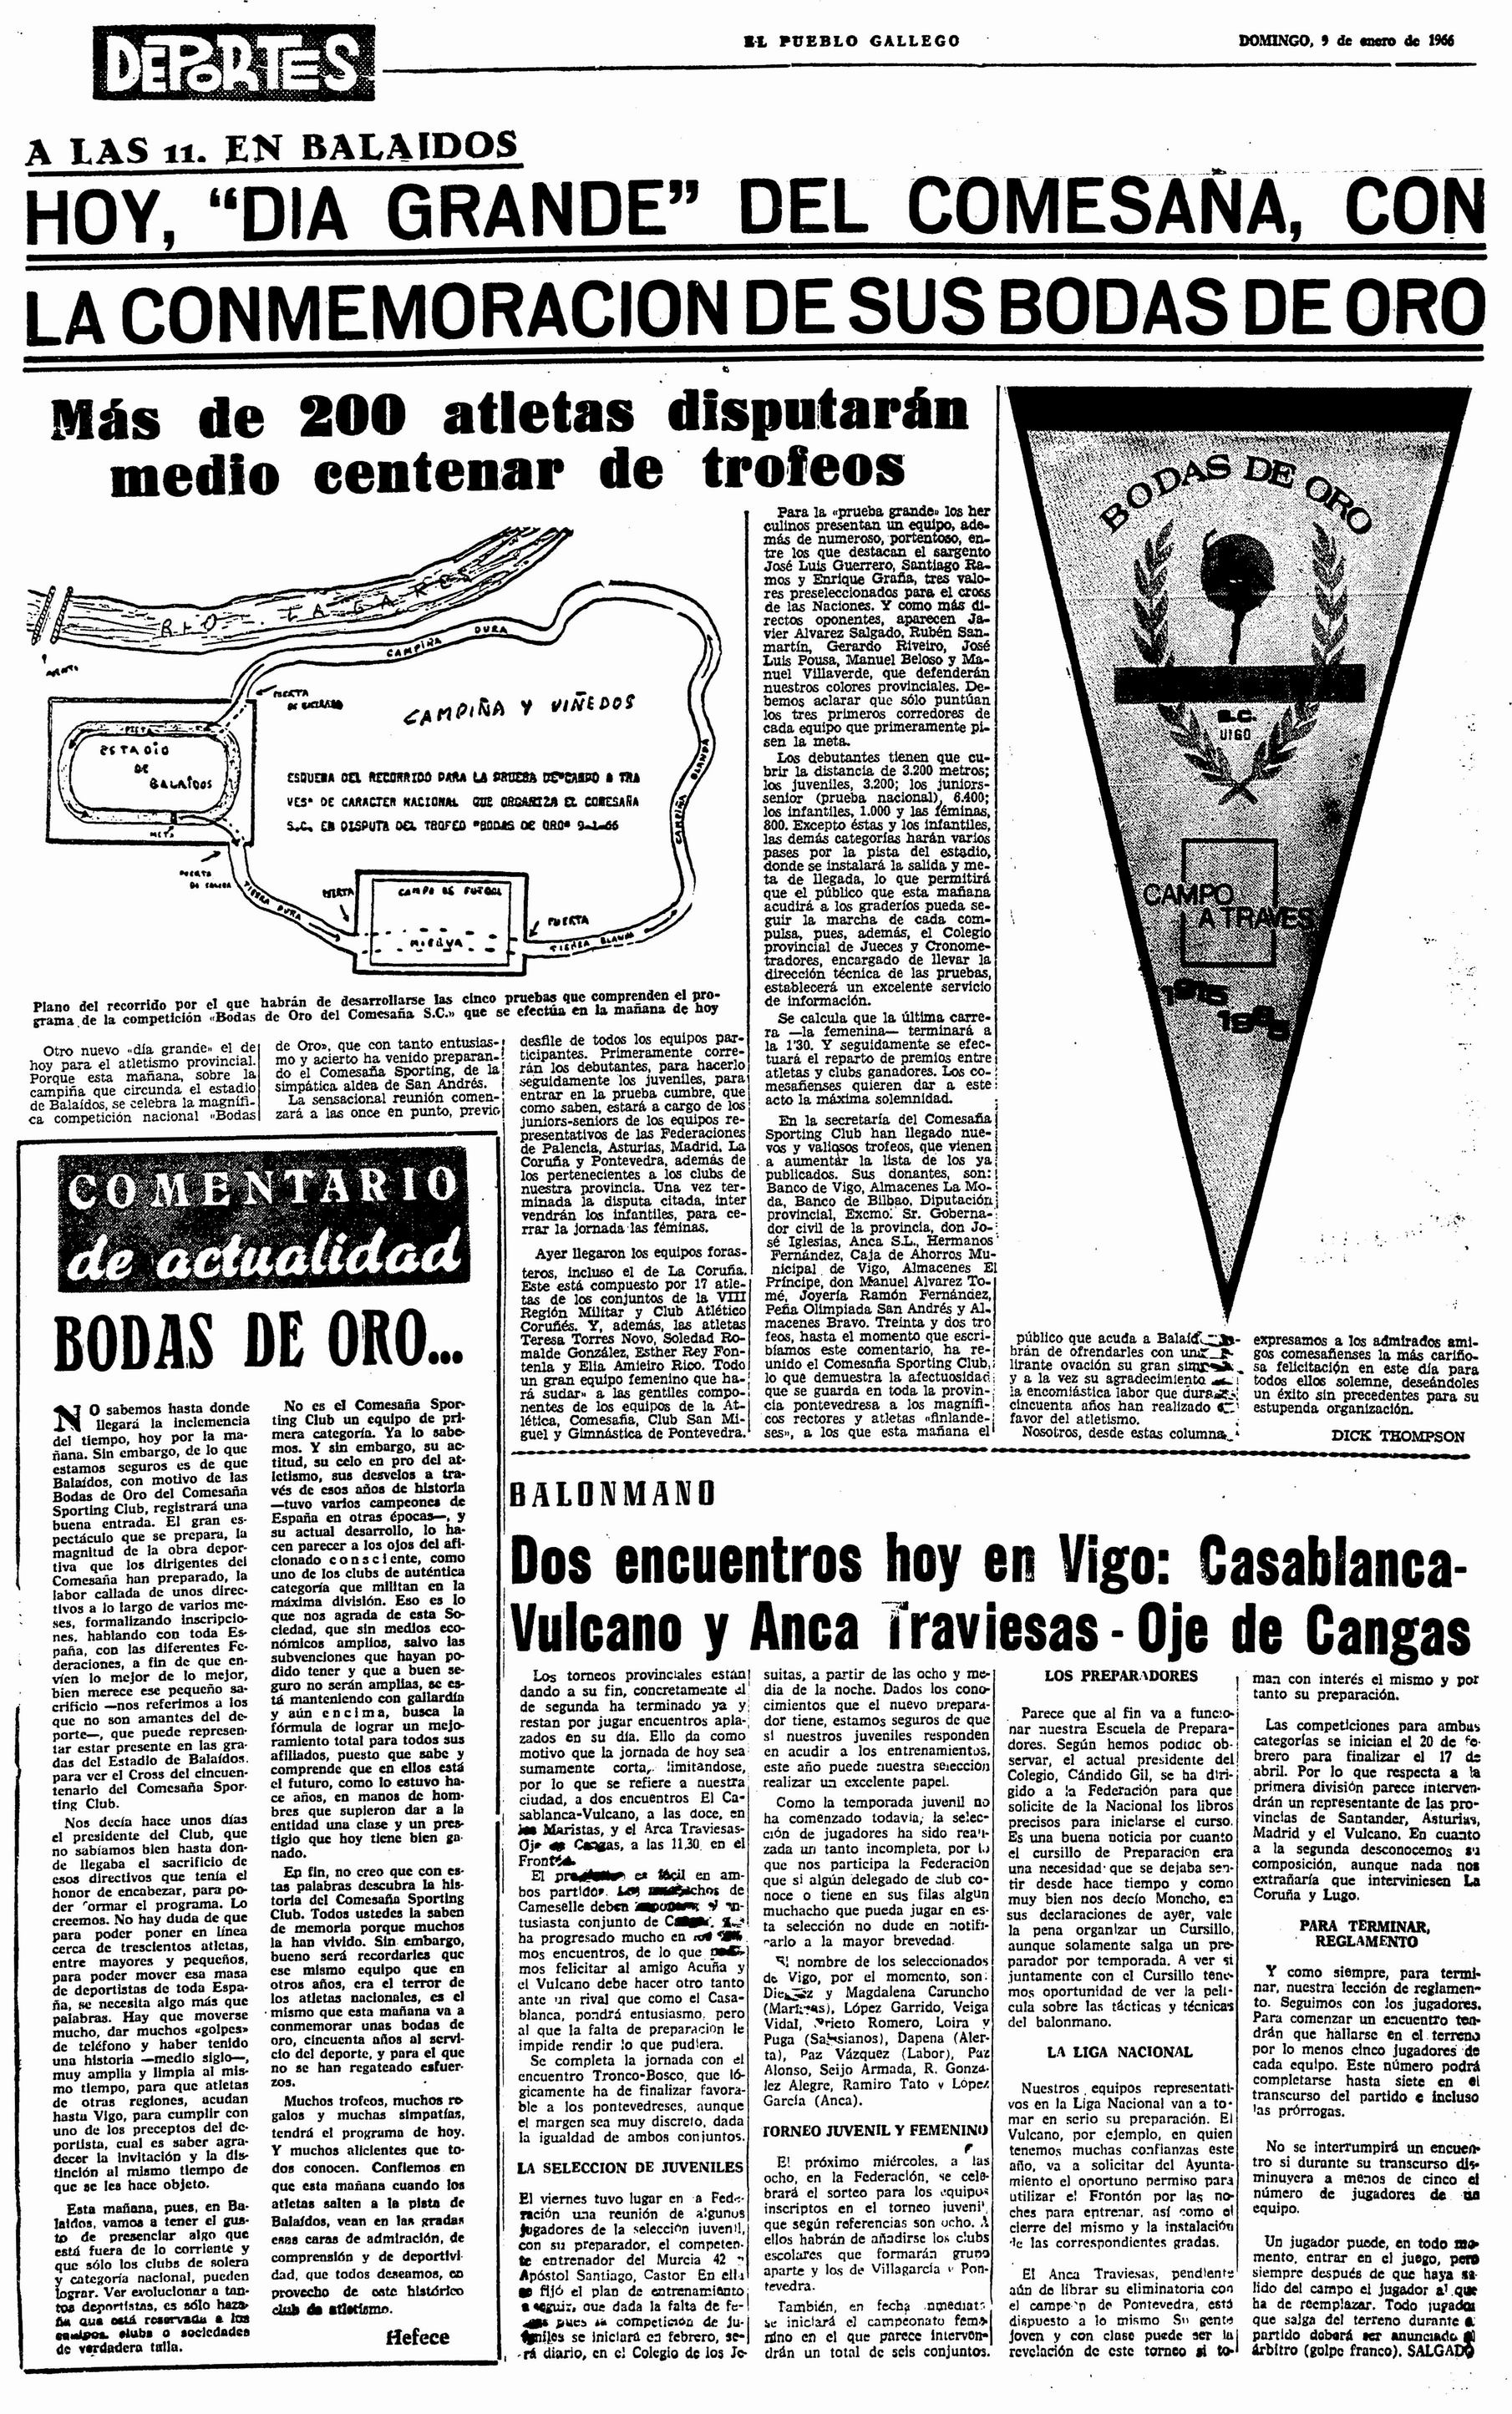 El Pueblo Gallego 09-01-1966